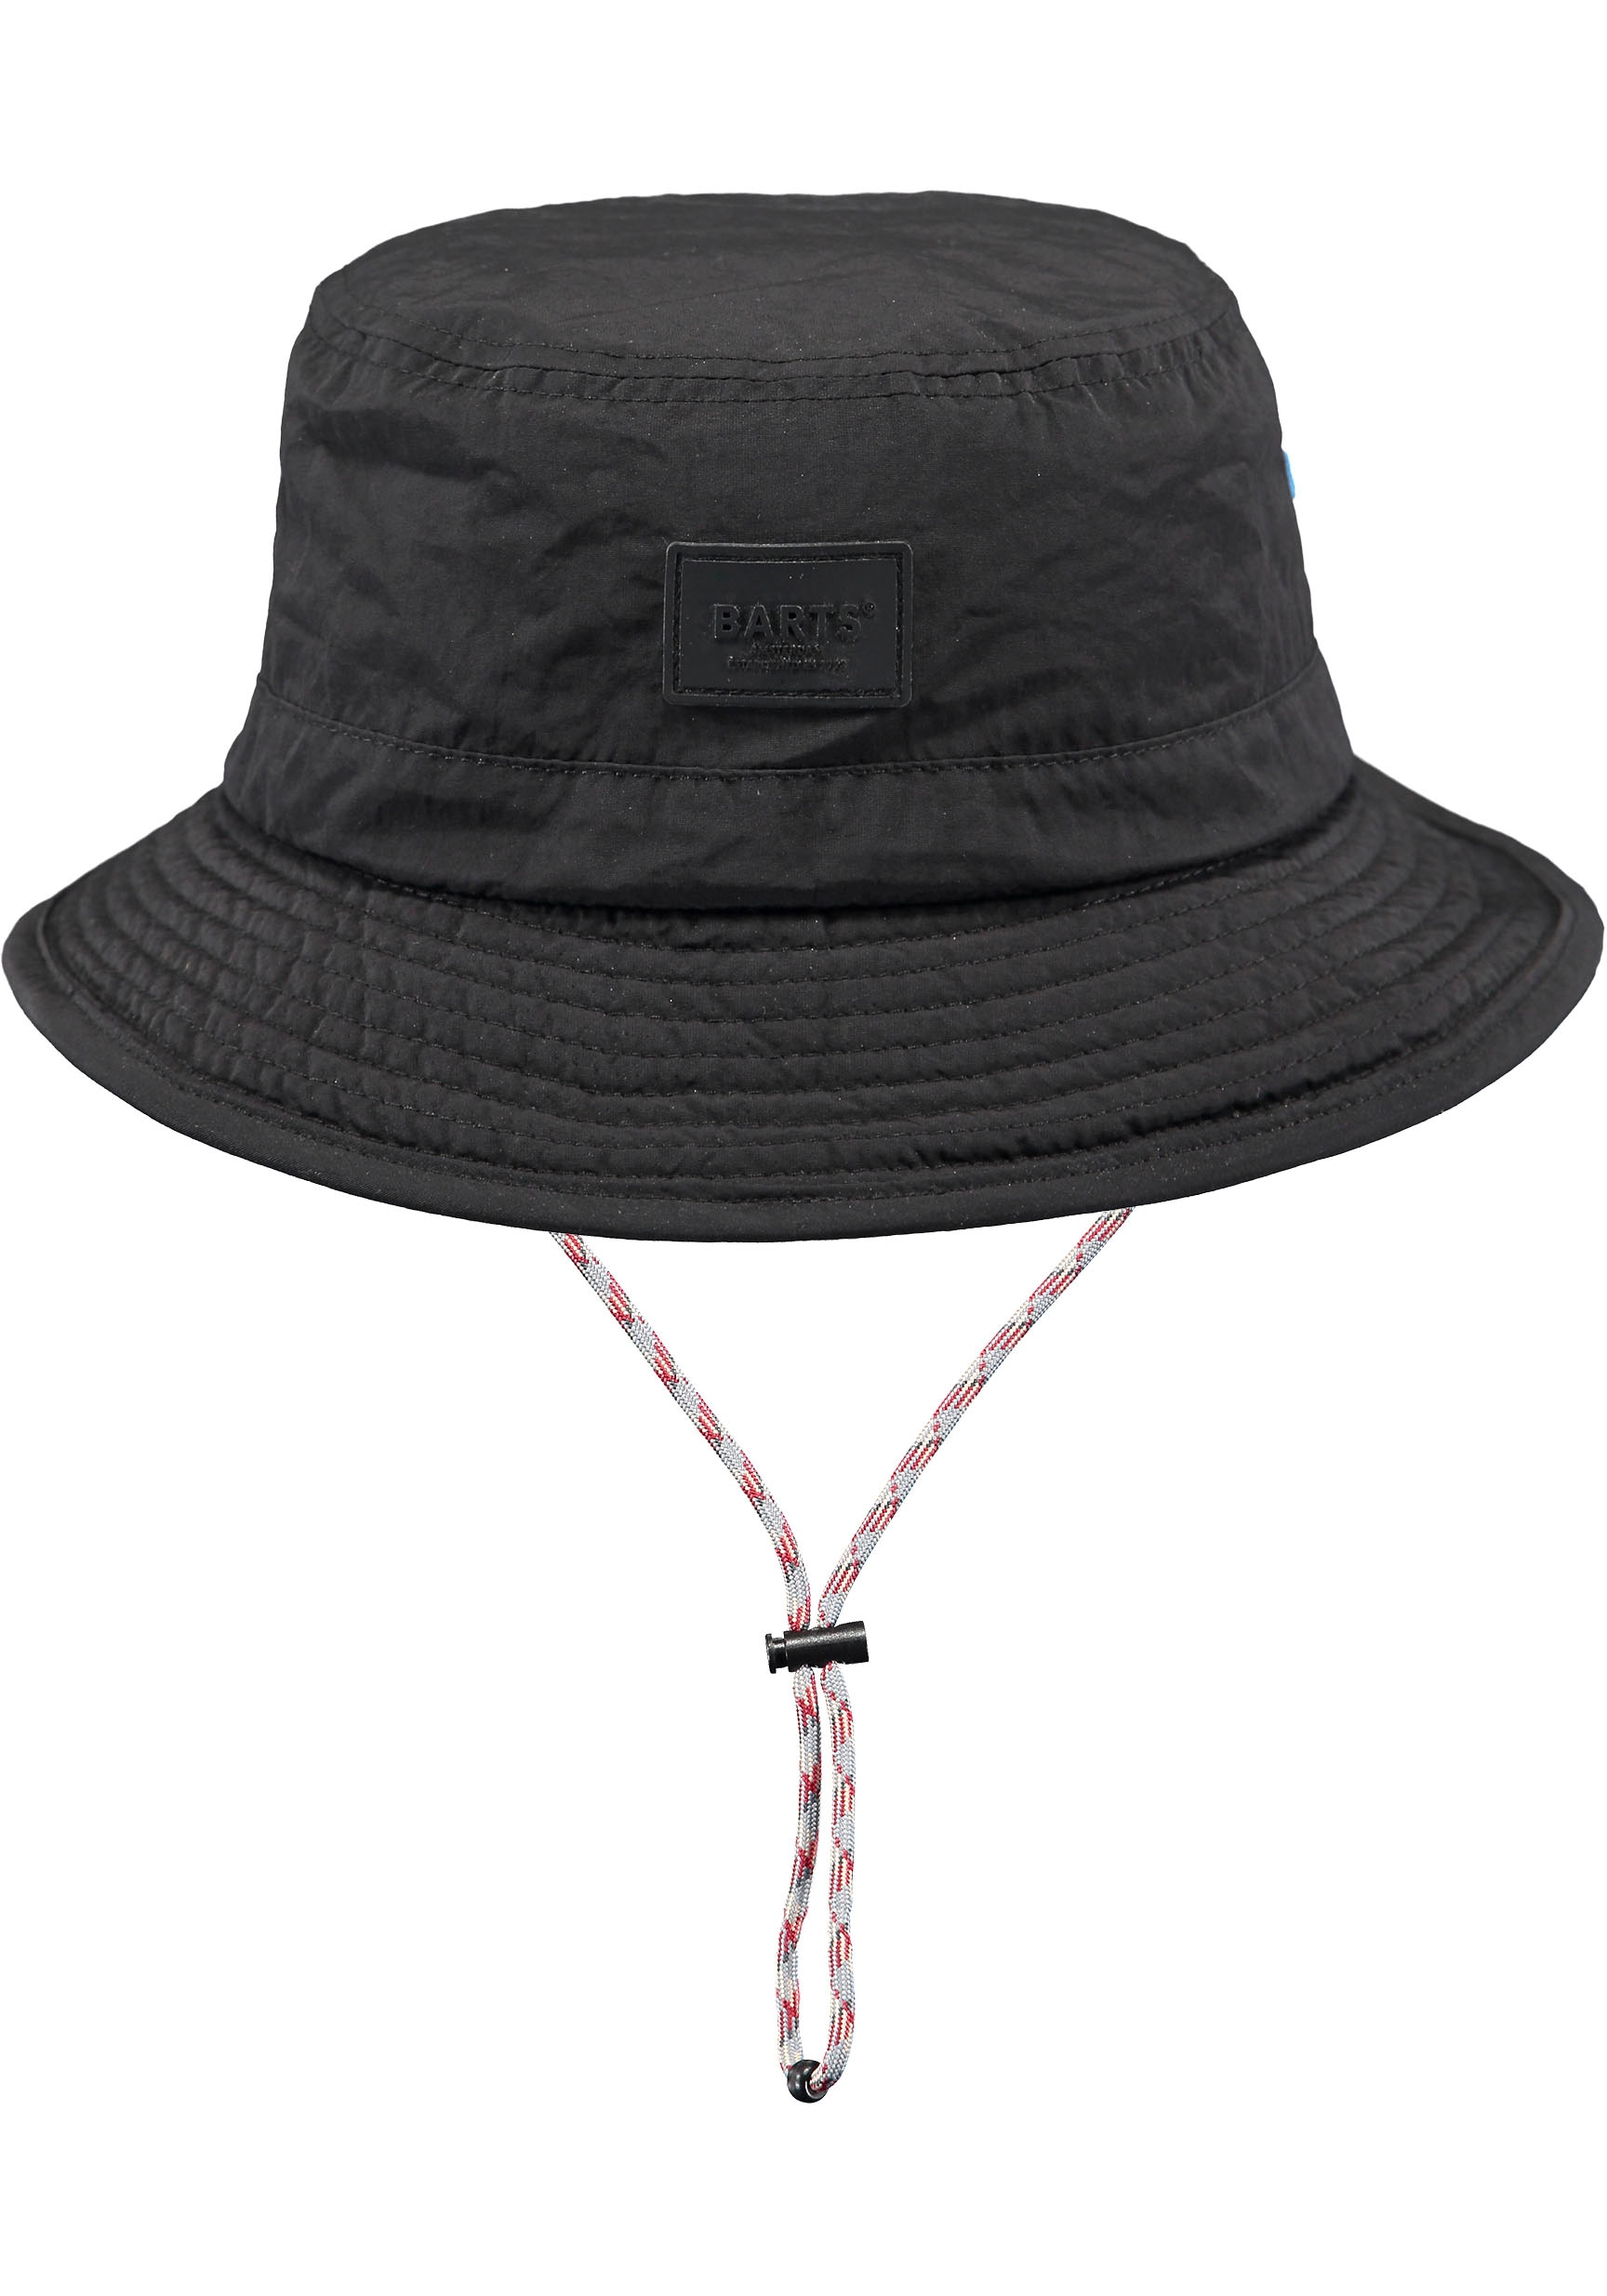 Barts Fischerhut, mit Bindeband, verstellbare online bei innenliegendes durch Passform Hutband